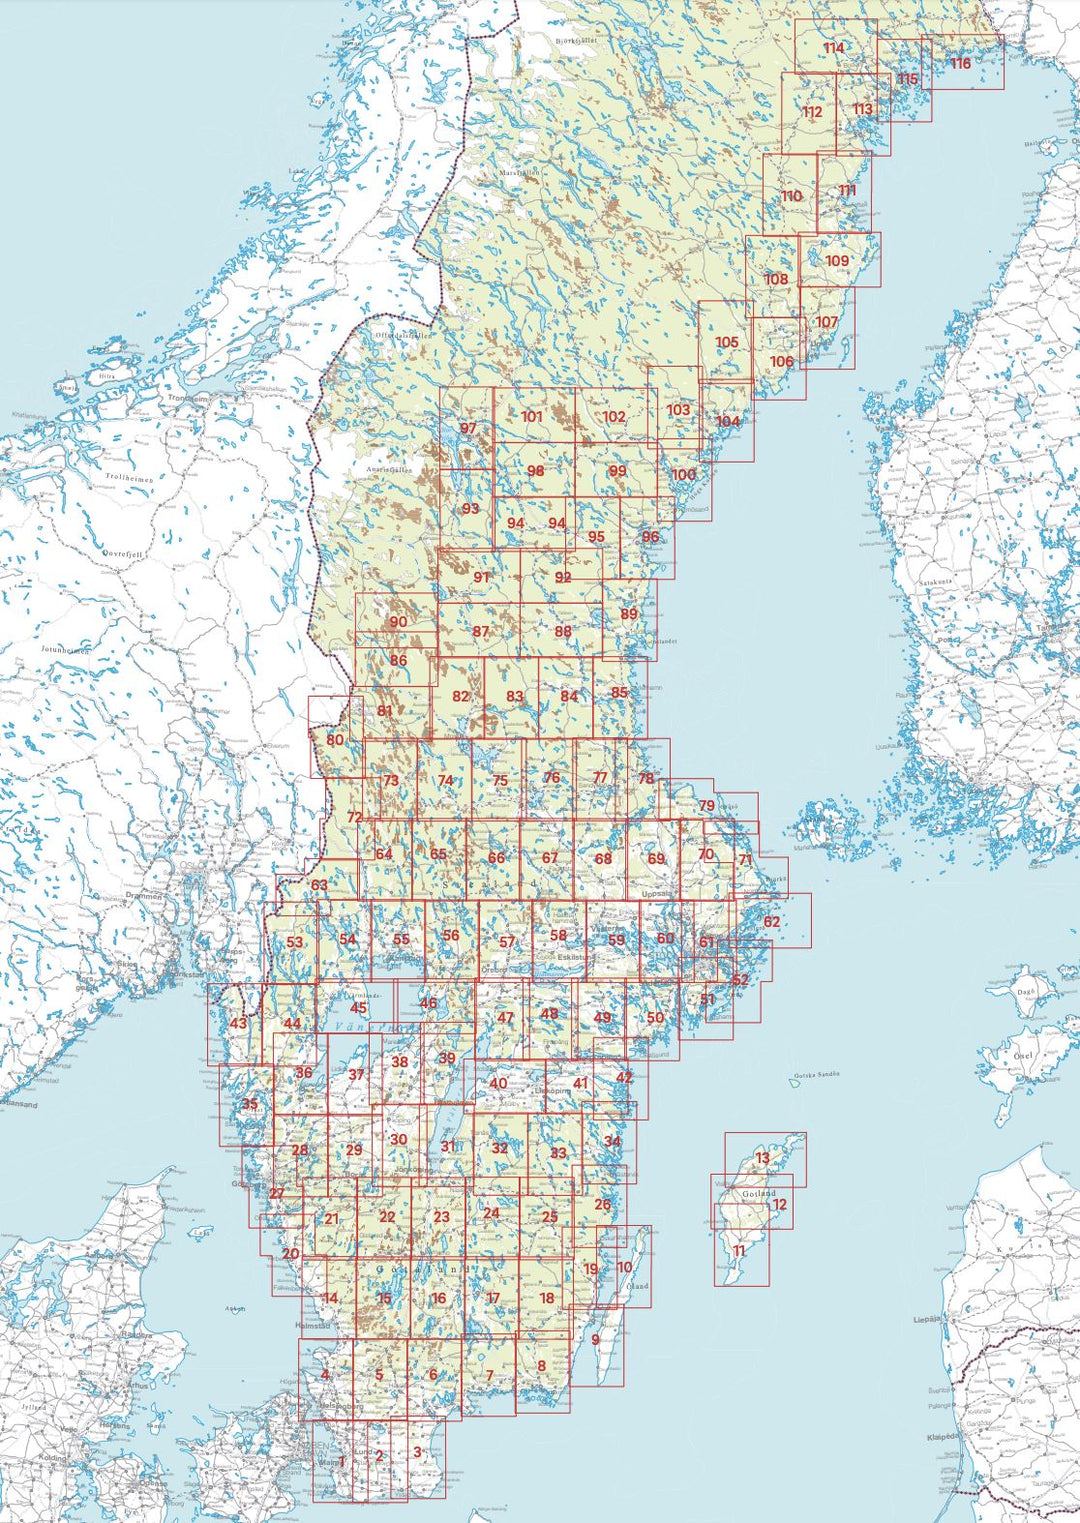 Carte topographique n° 111 - Skellefteå (Suède) | Norstedts - Sverigeserien carte pliée Norstedts 